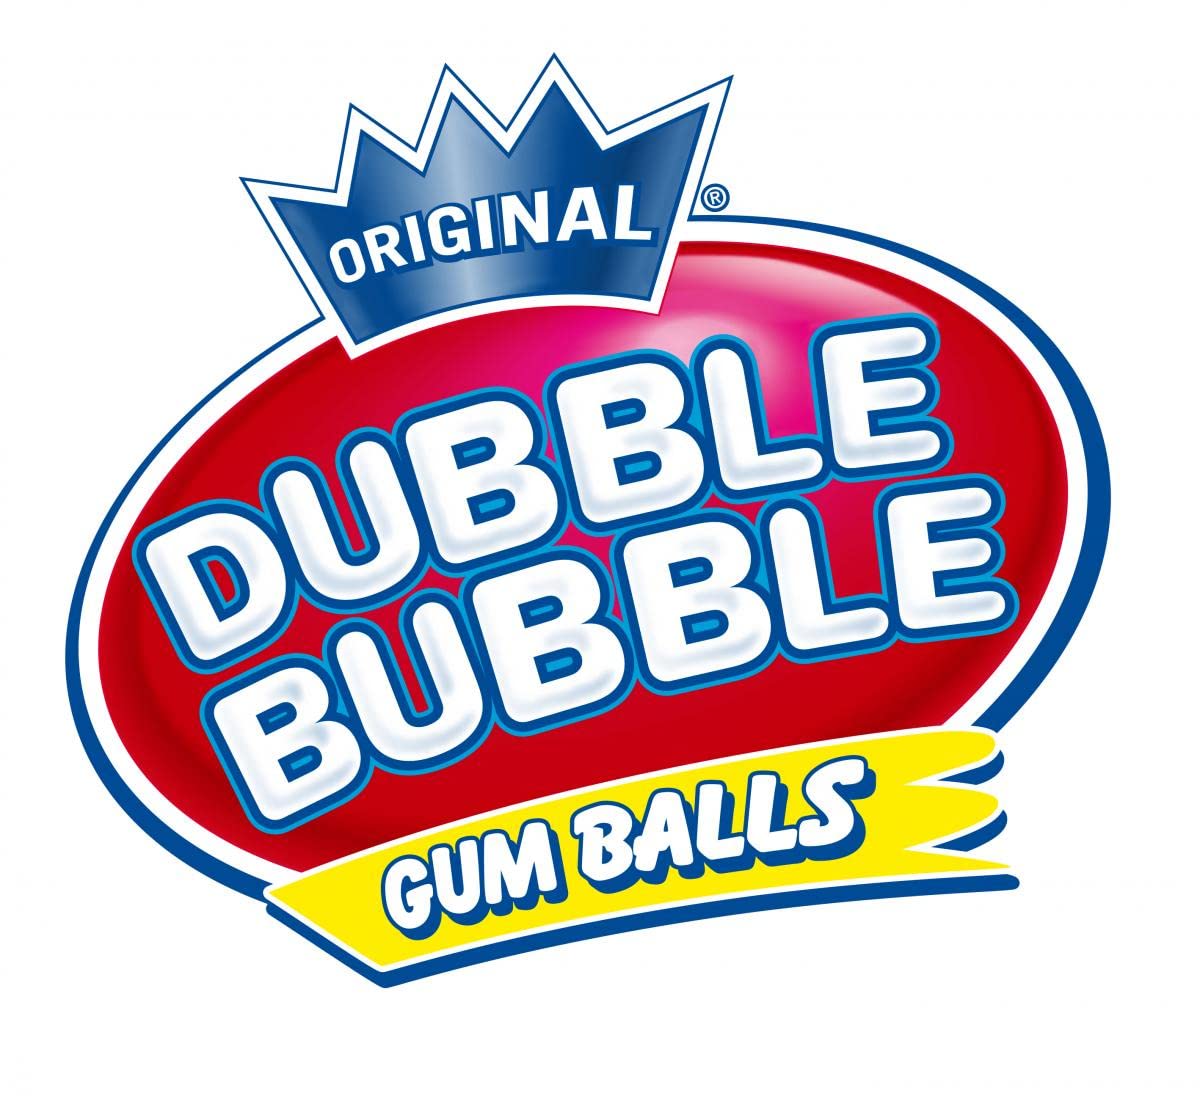 Dubble Bubble Painterz Mouth Coloring Fruit Flavor Bubblegum Gumballs 3 Lbs Bulk (48 Oz)